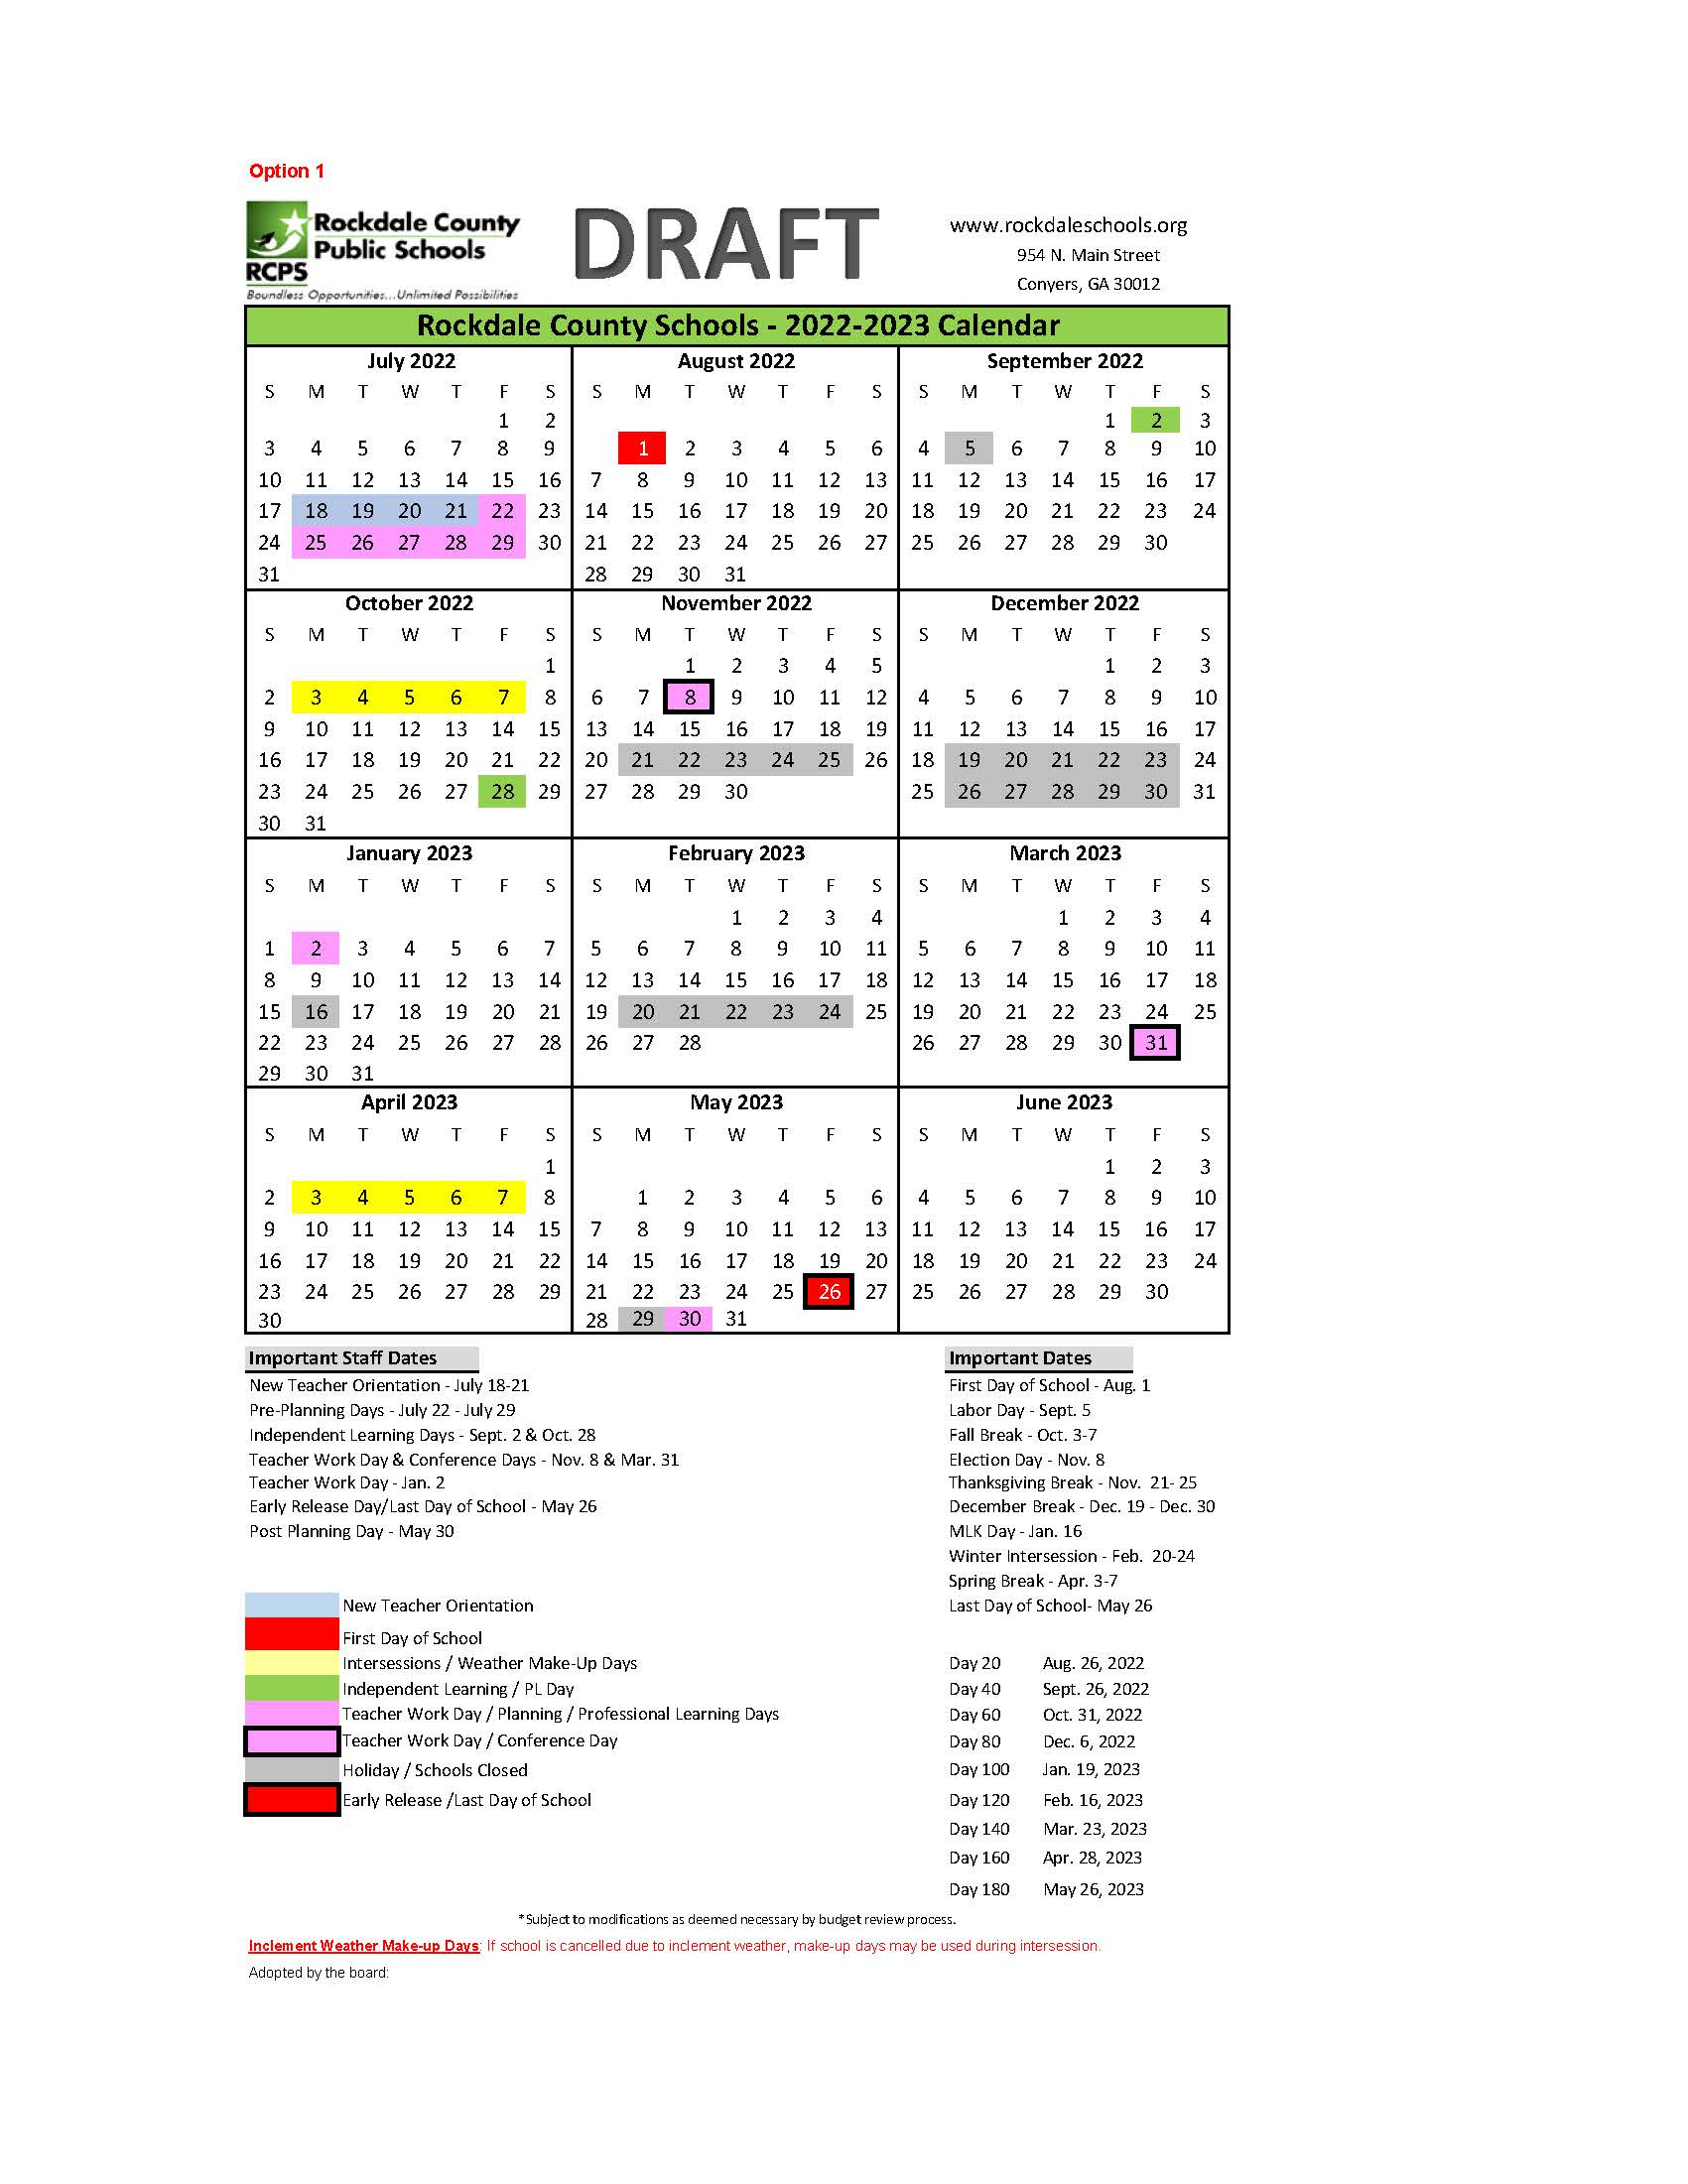 Rockdale County Schools Calendar 2022 16 2022